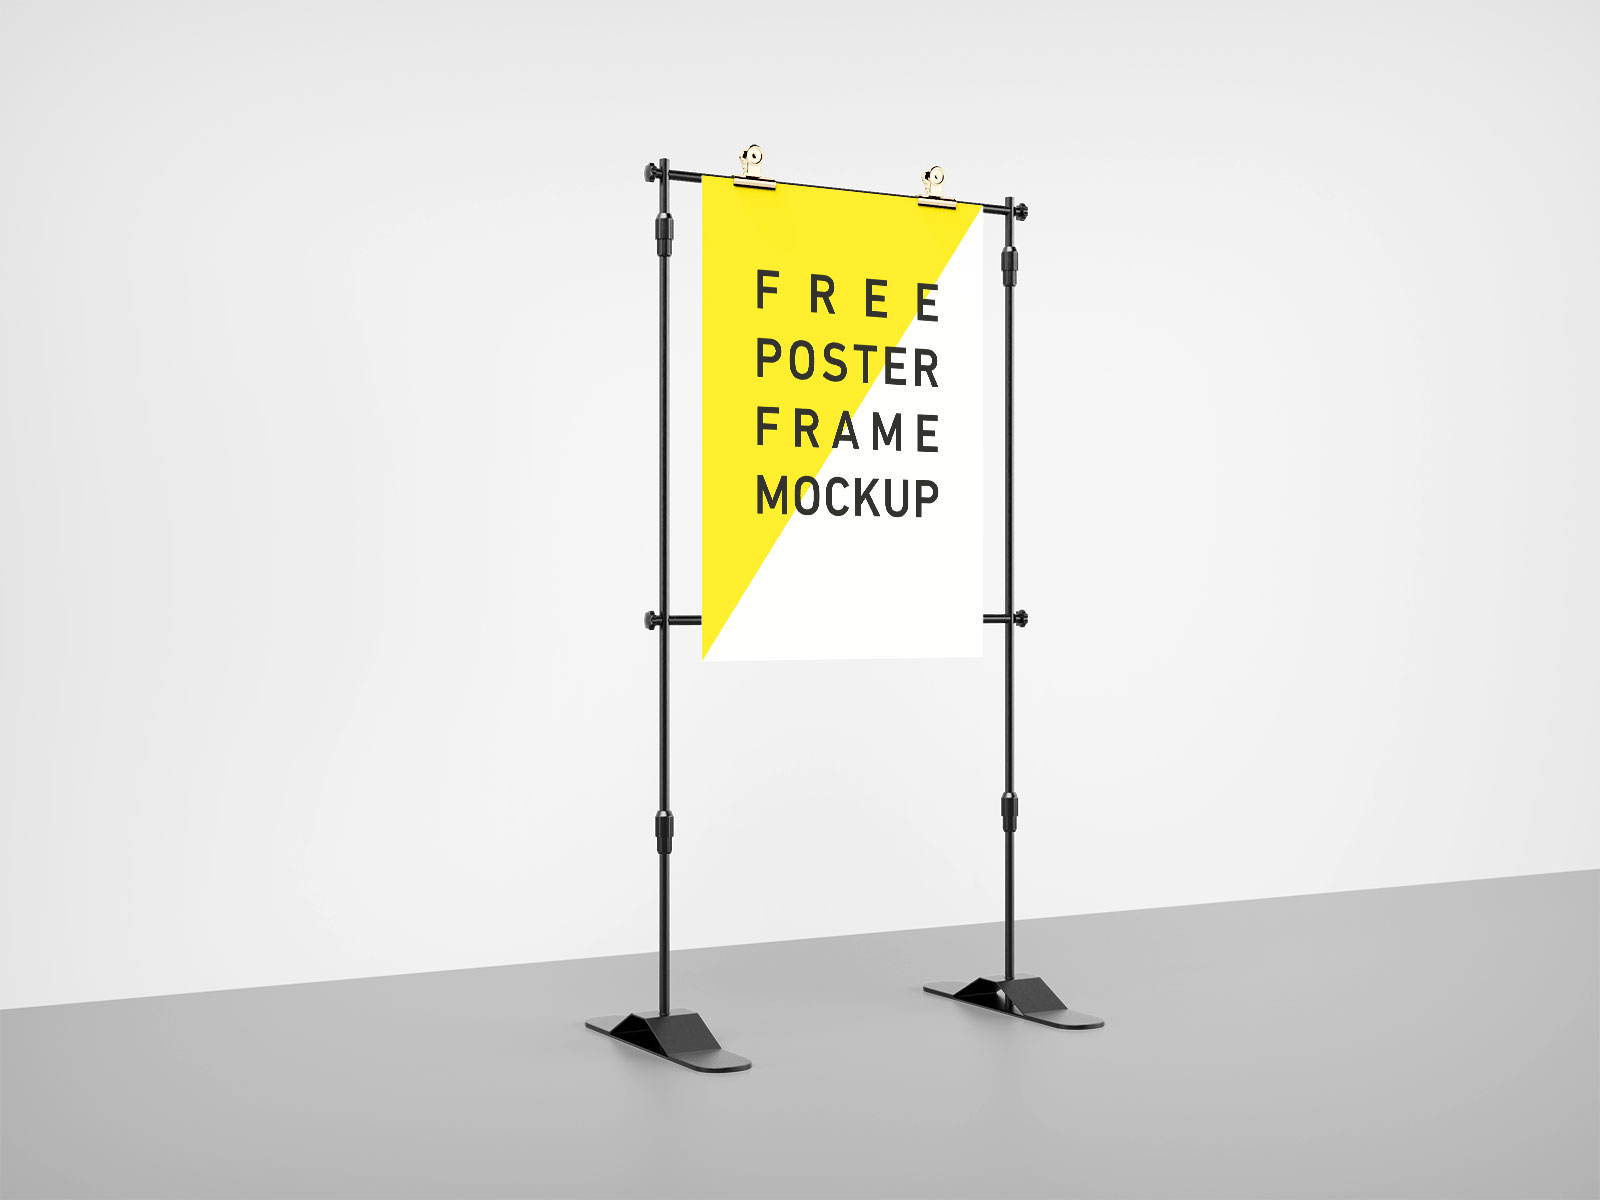 Free-Poster-Frame-Mockup-PSD-Set-2